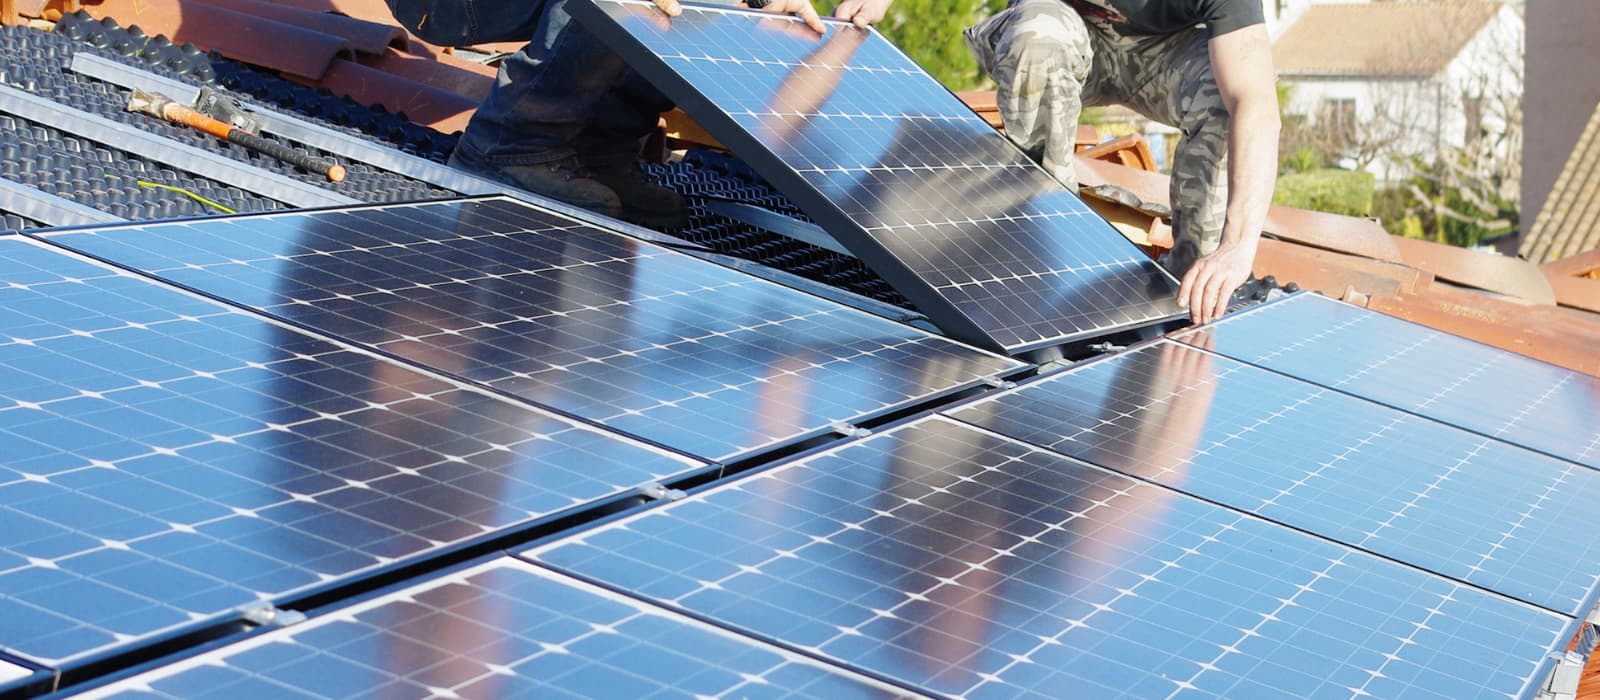 Pannello fotovoltaico: come funziona, vantaggi e installazione